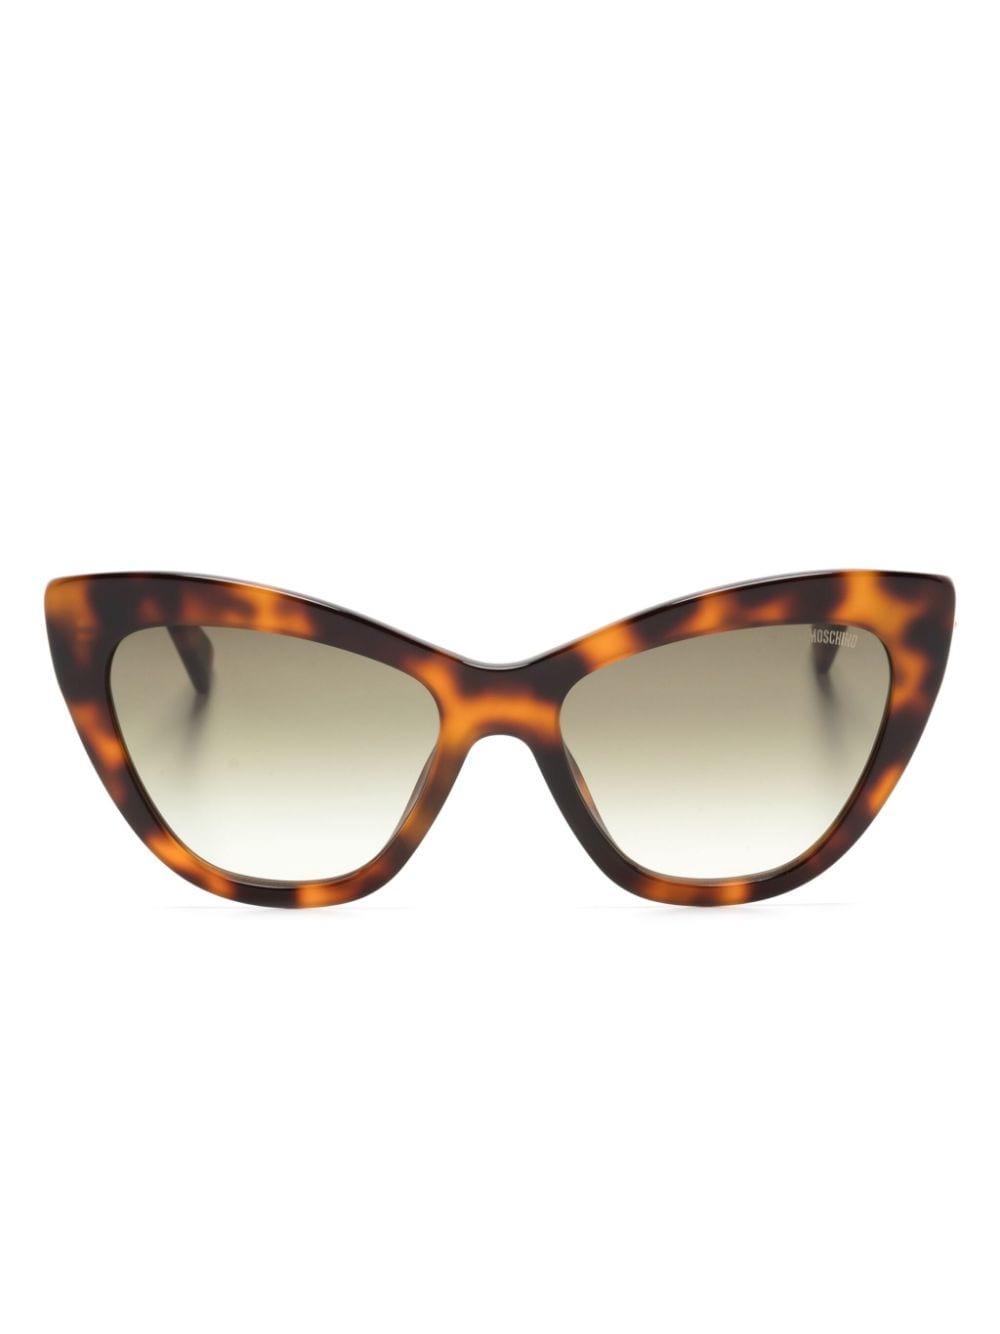 Moschino Eyewear Mos 122s 猫眼框太阳眼镜 In Brown